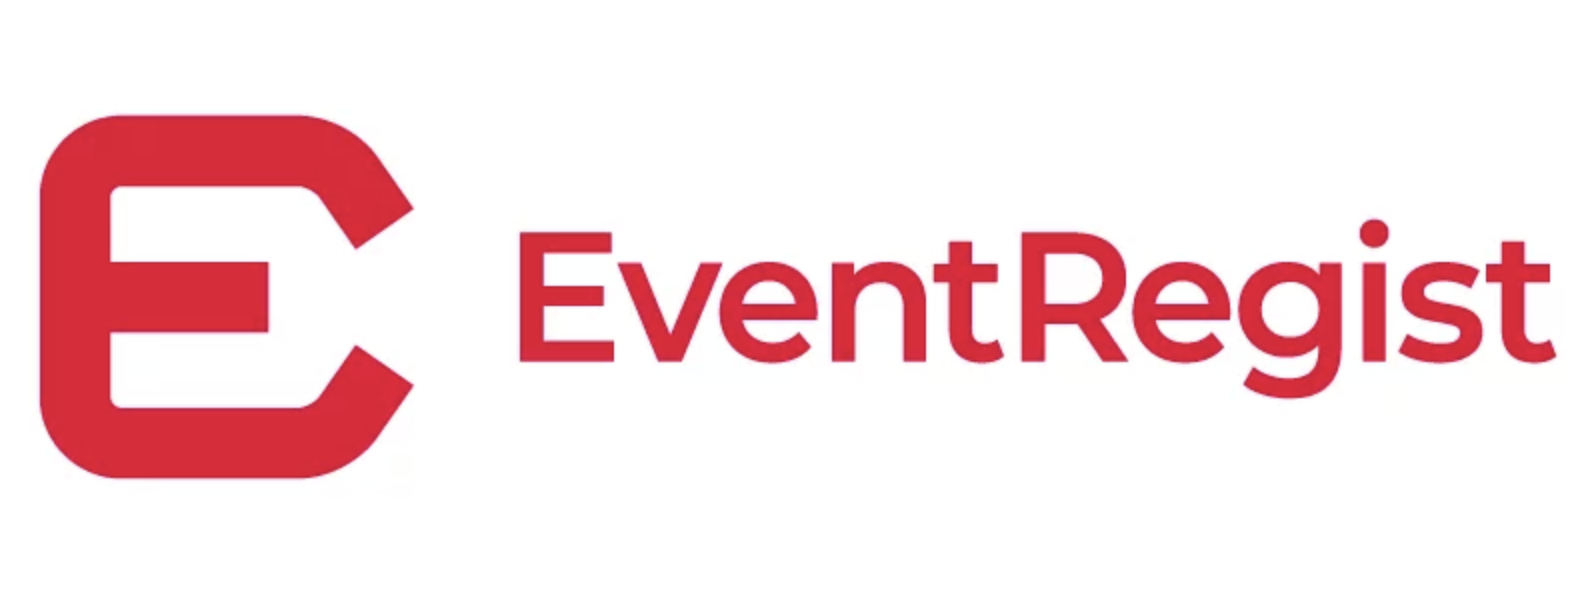 EventRegist_logo-2